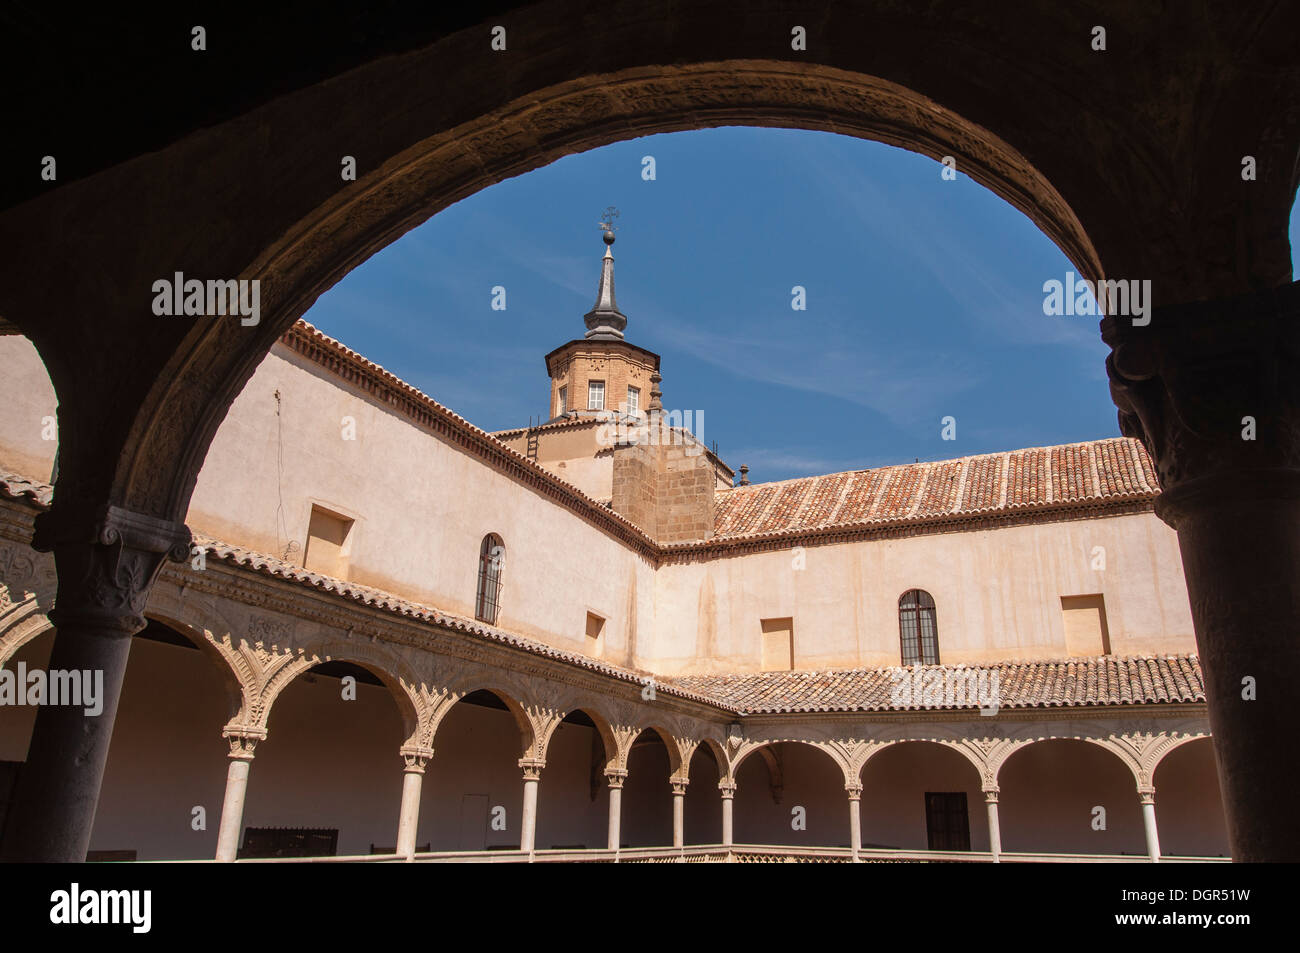 El Museo de Santa Cruz est un edificio del s. XVI de la ciudad de Toledo, Castilla la Mancha, España Banque D'Images